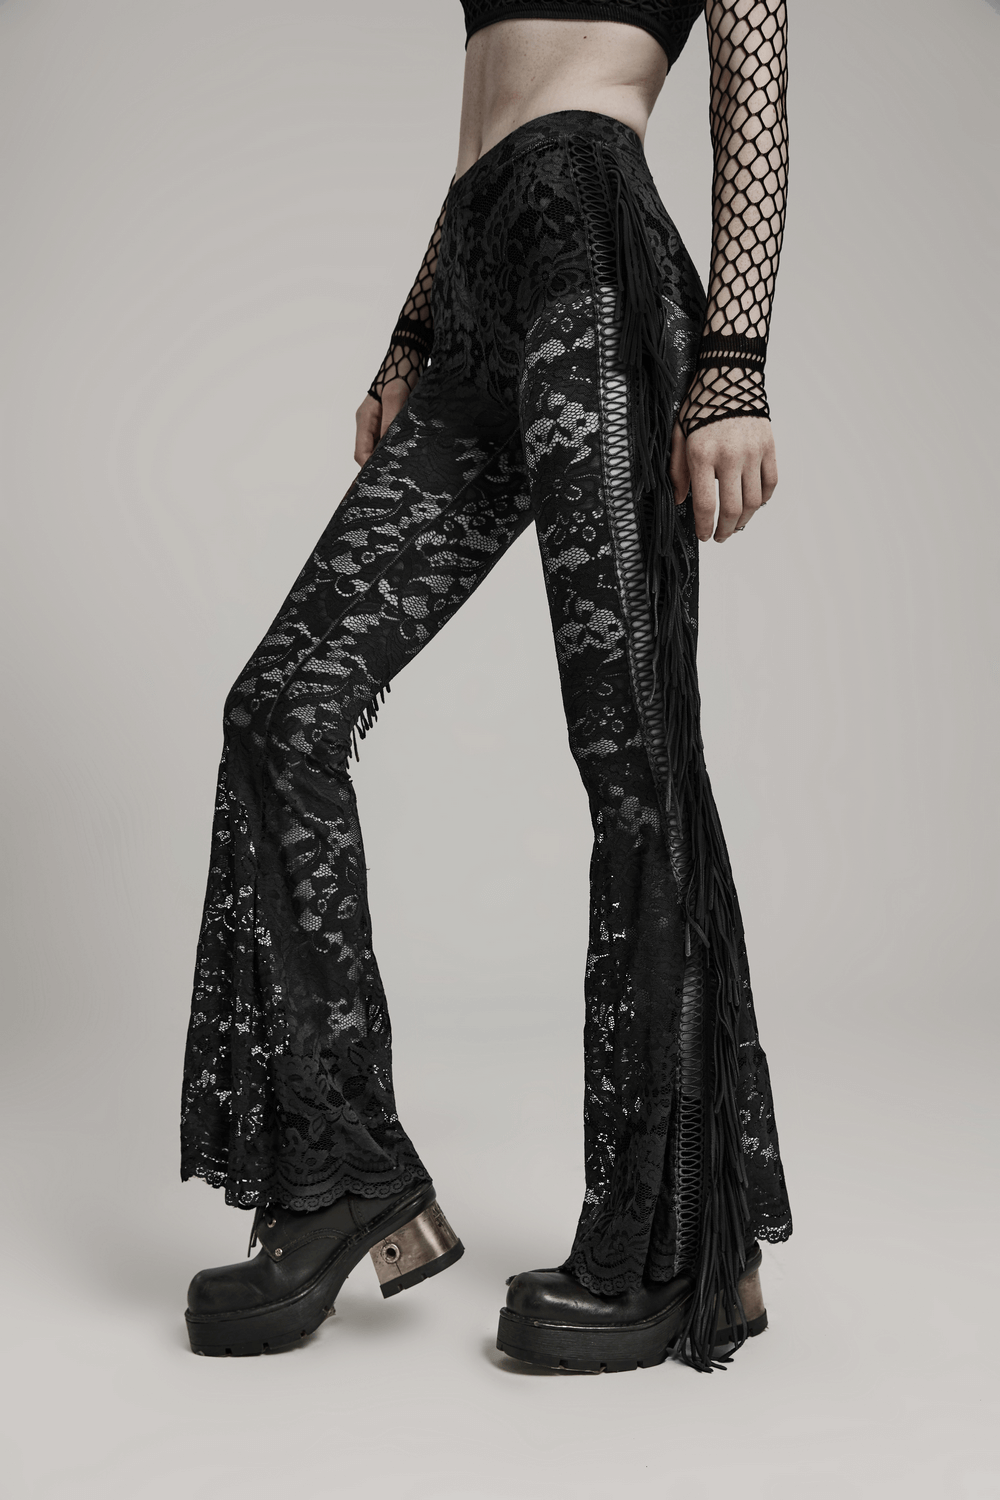 Stylish Gothic Black Lace Fringed Flare Pants